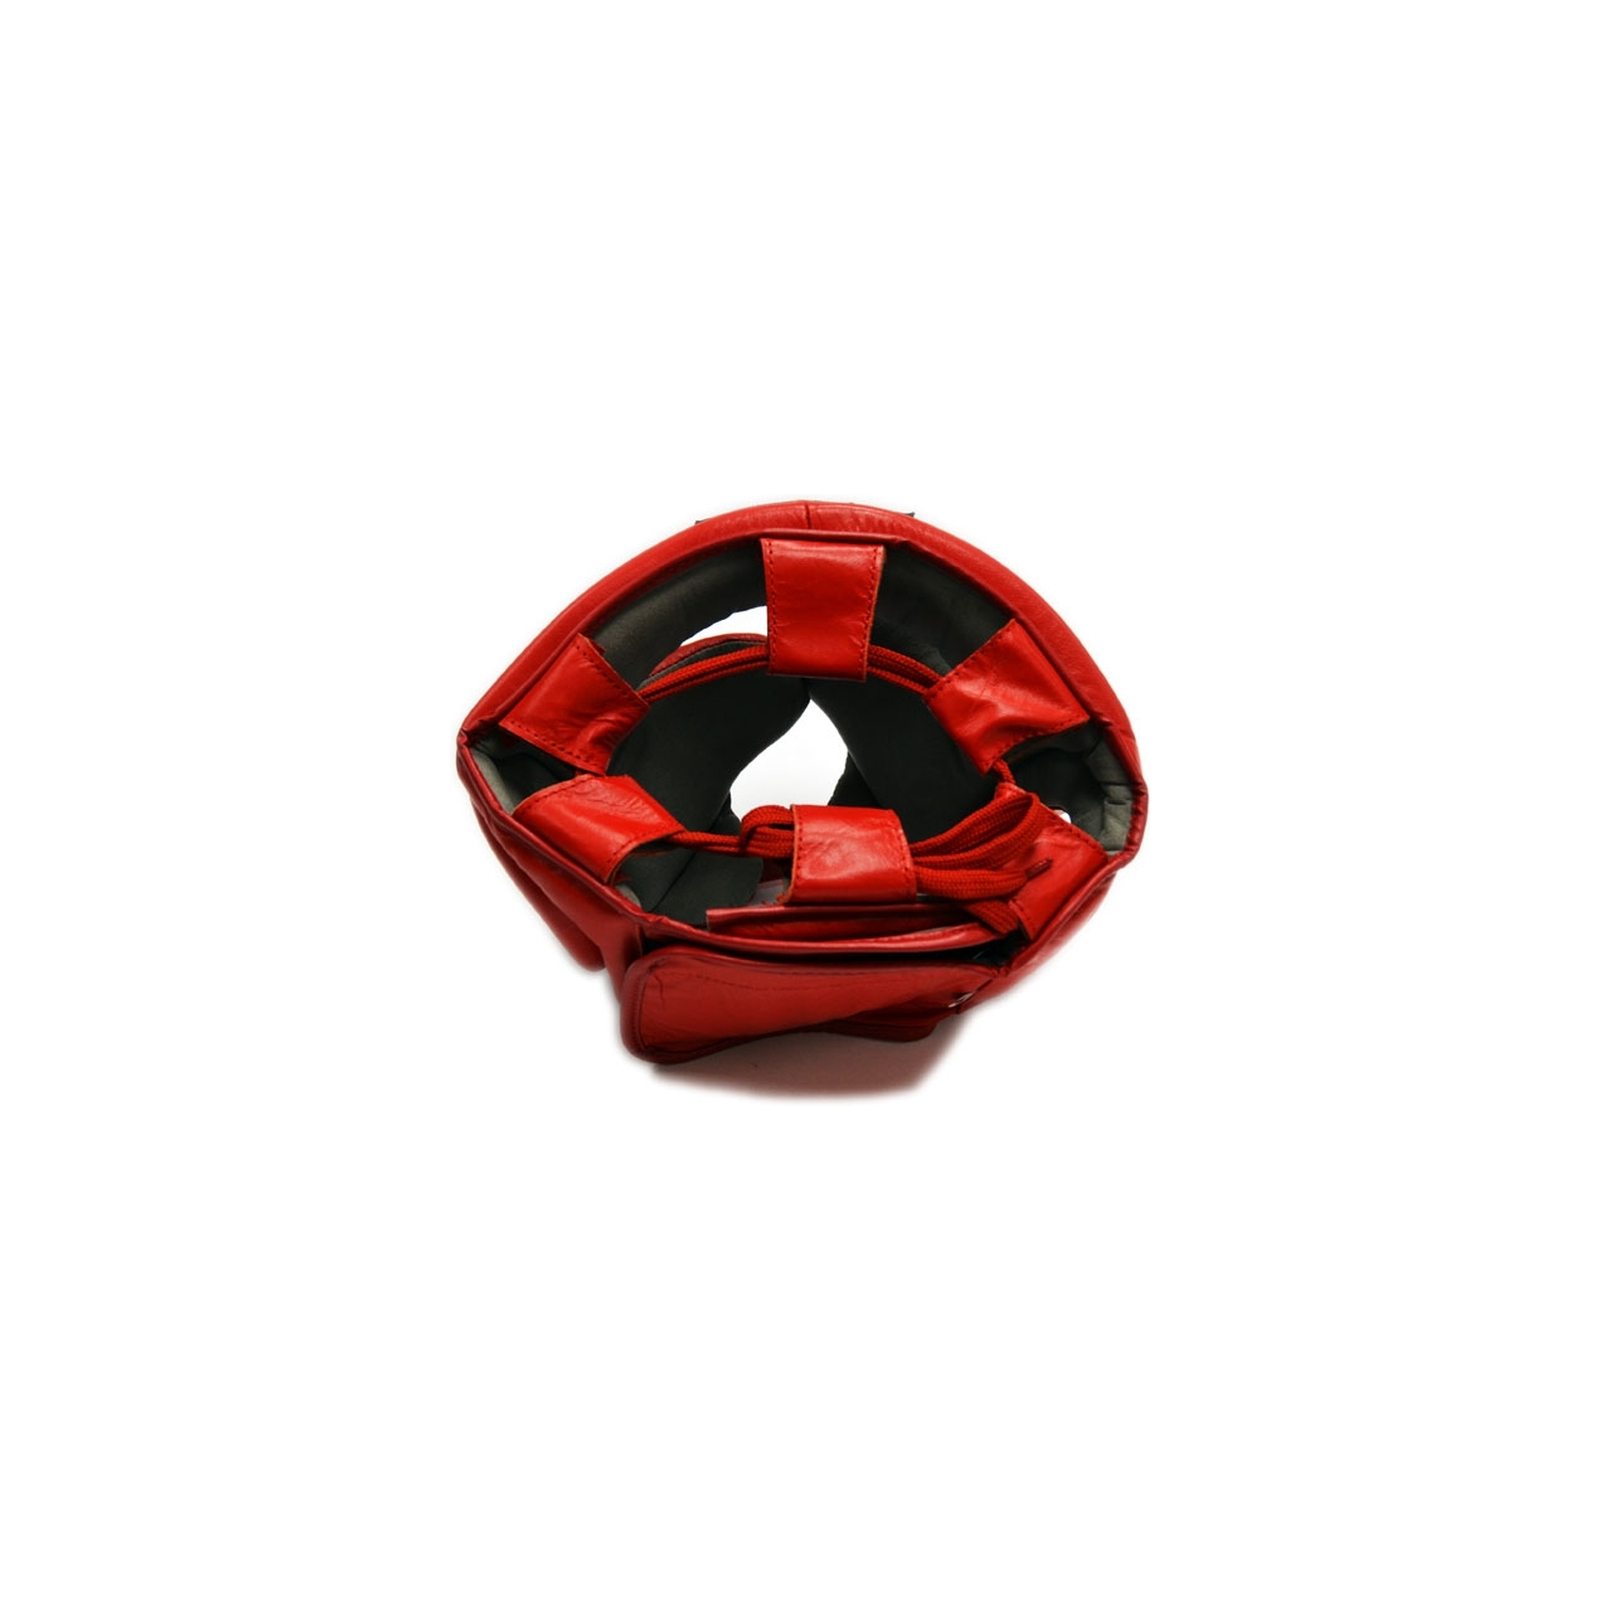 Боксерский шлем Thor 716 M Шкіра Червоний (716 (Leather) RED M) изображение 3